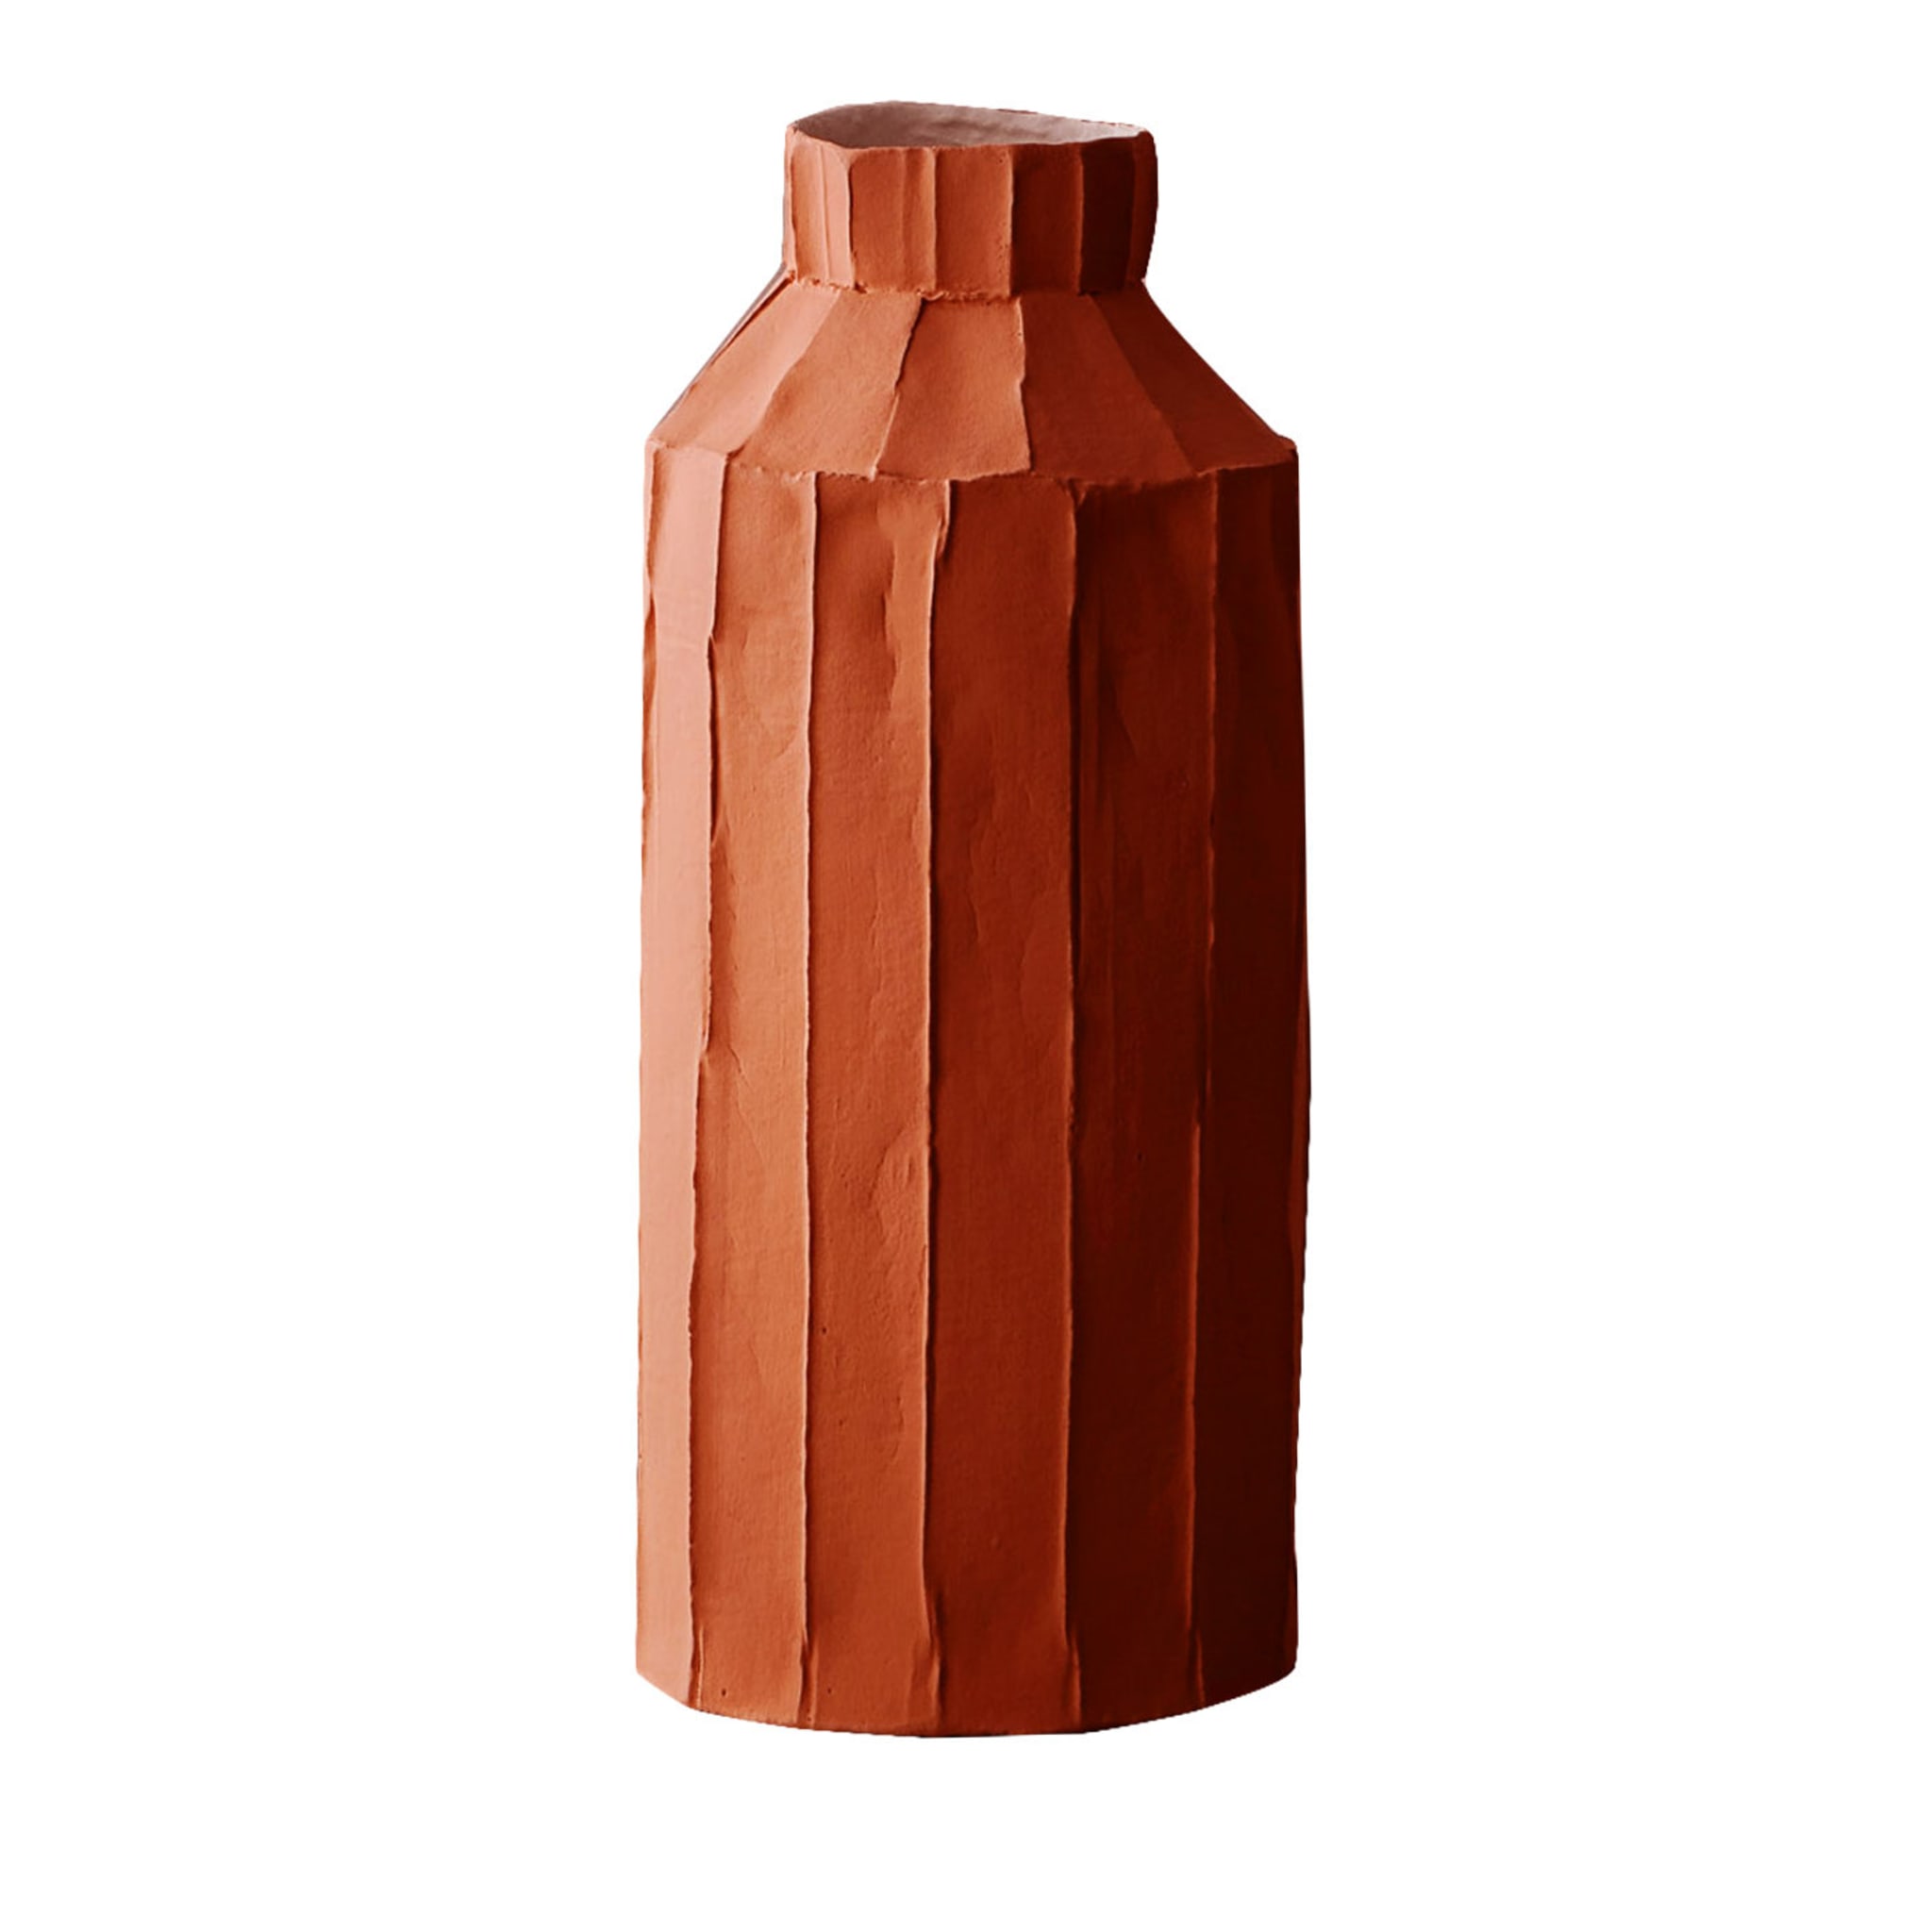 Cartocci Corteccia Fide Rote Vase - Hauptansicht